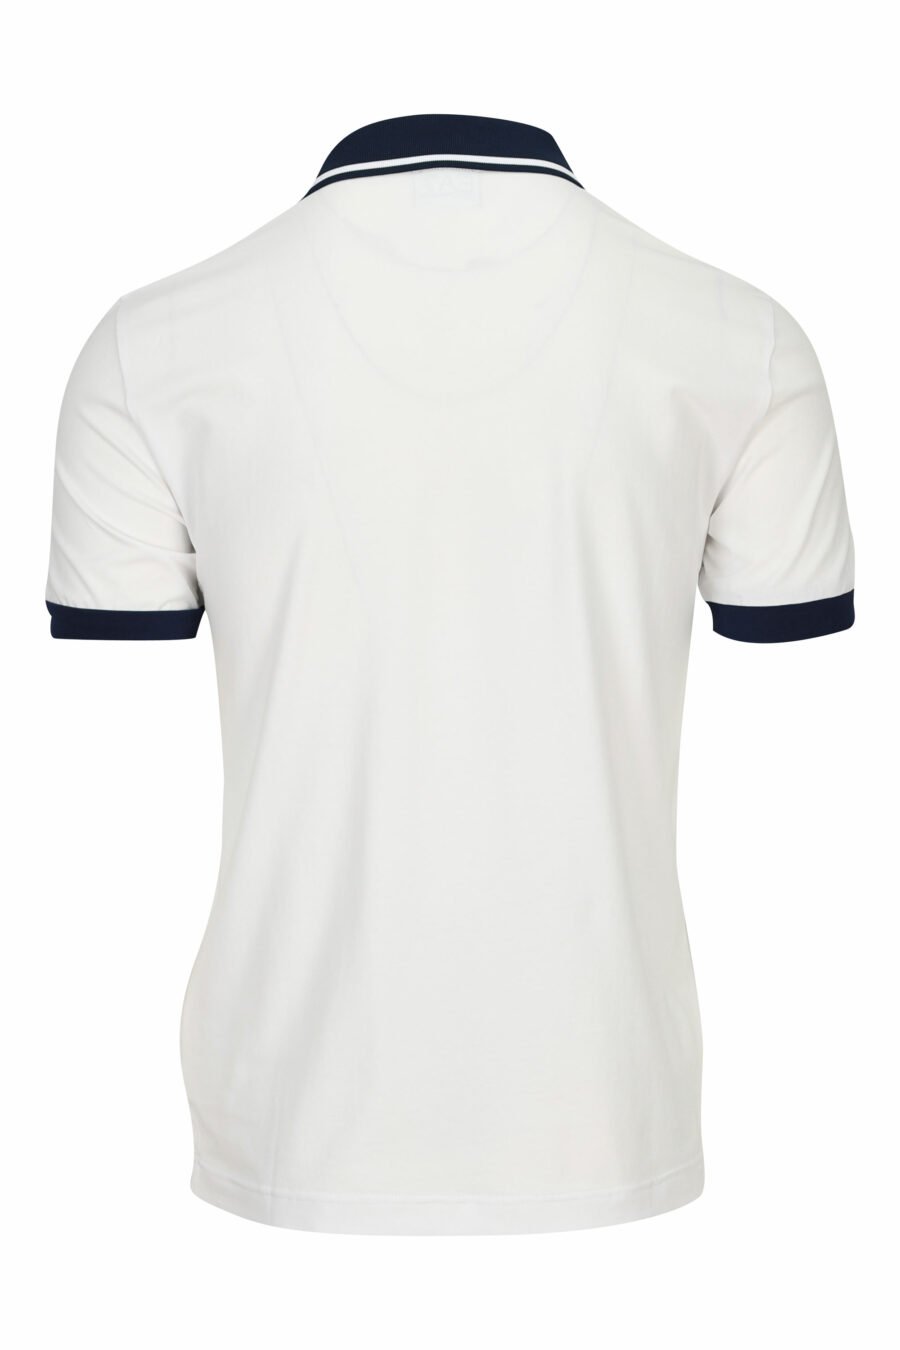 Weißes Poloshirt mit Mini-Logo "lux identity" auf der Schulterpartie - 8058947458868